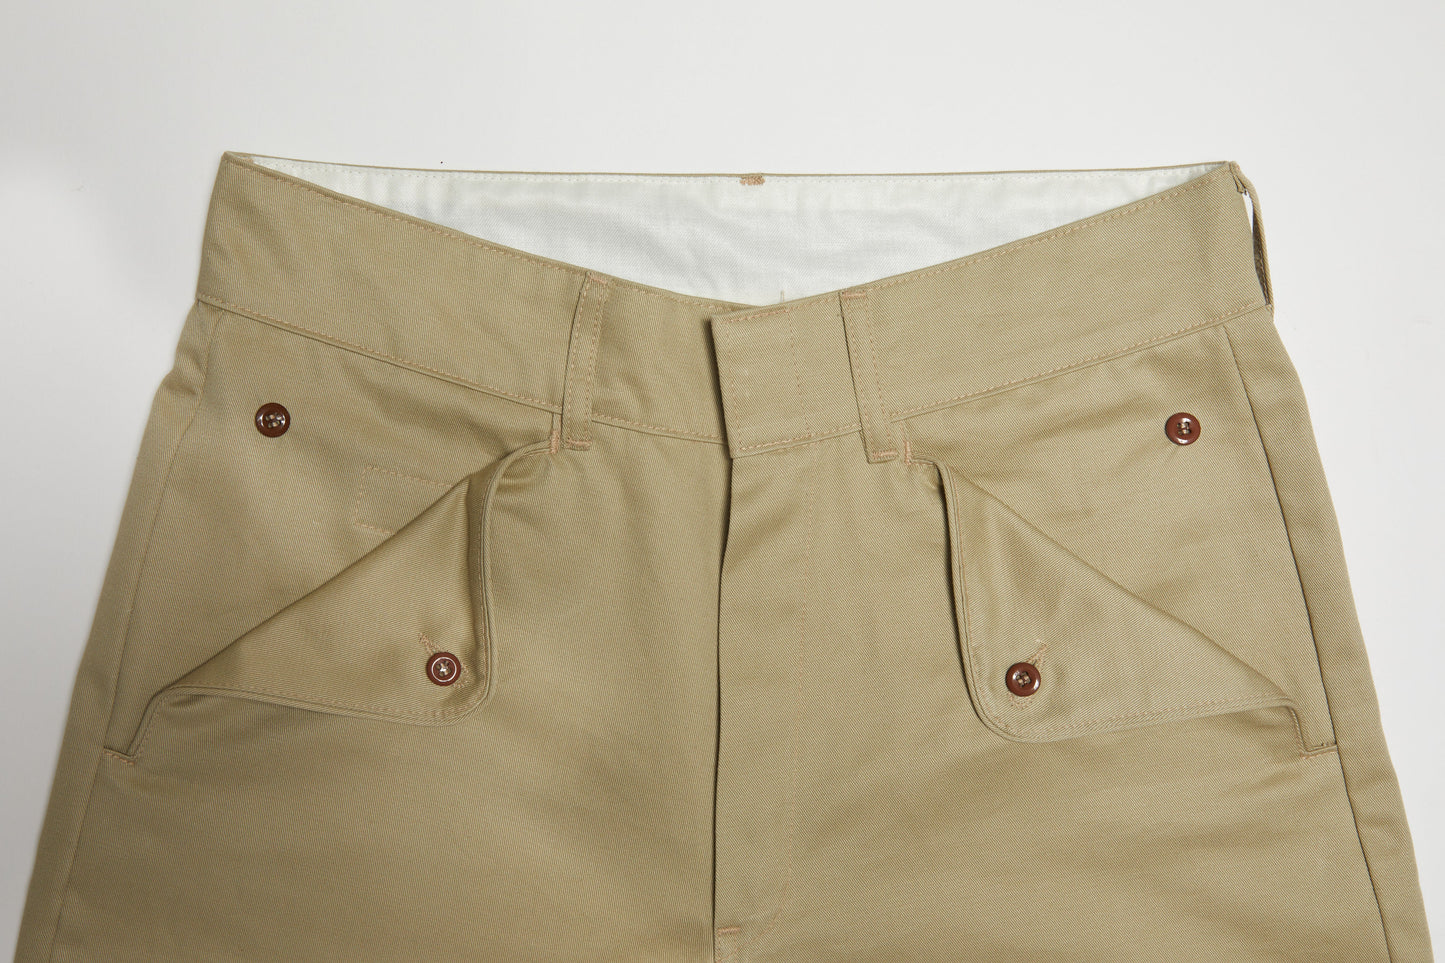 Cub Scout Pants (Khaki)